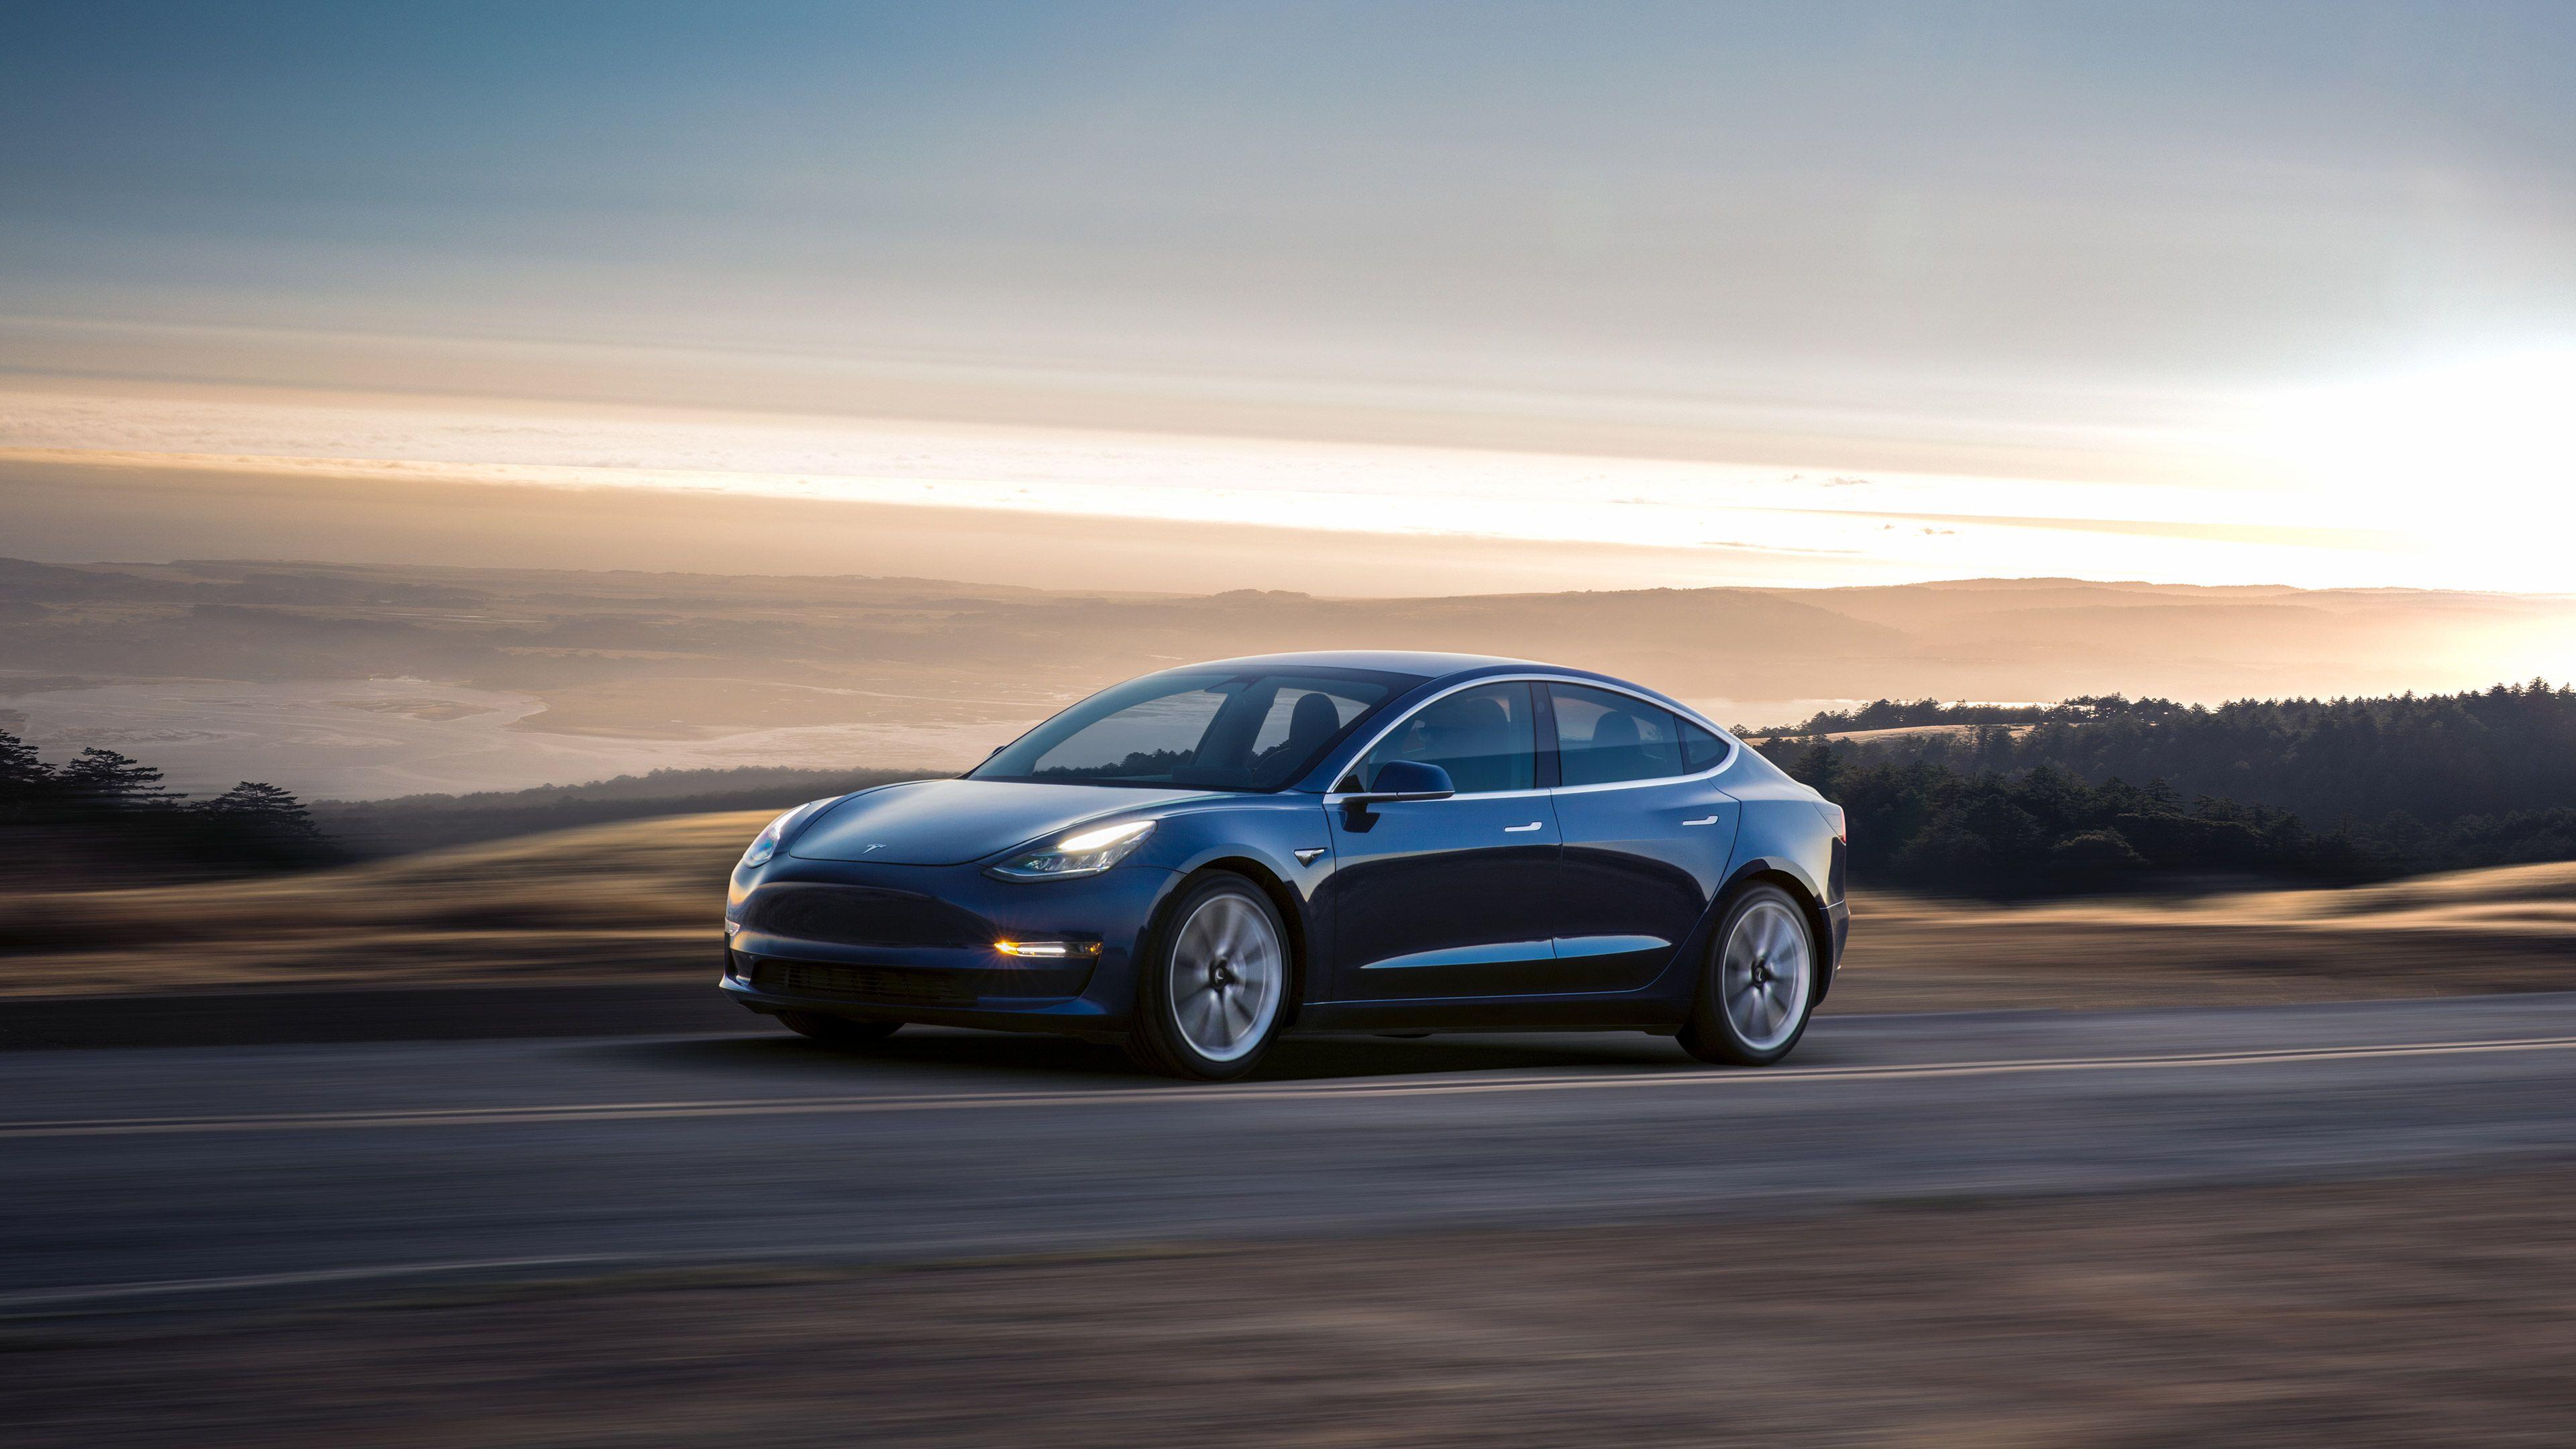 Tesla Model HD Cars, 4k Wallpaper, Image, Background